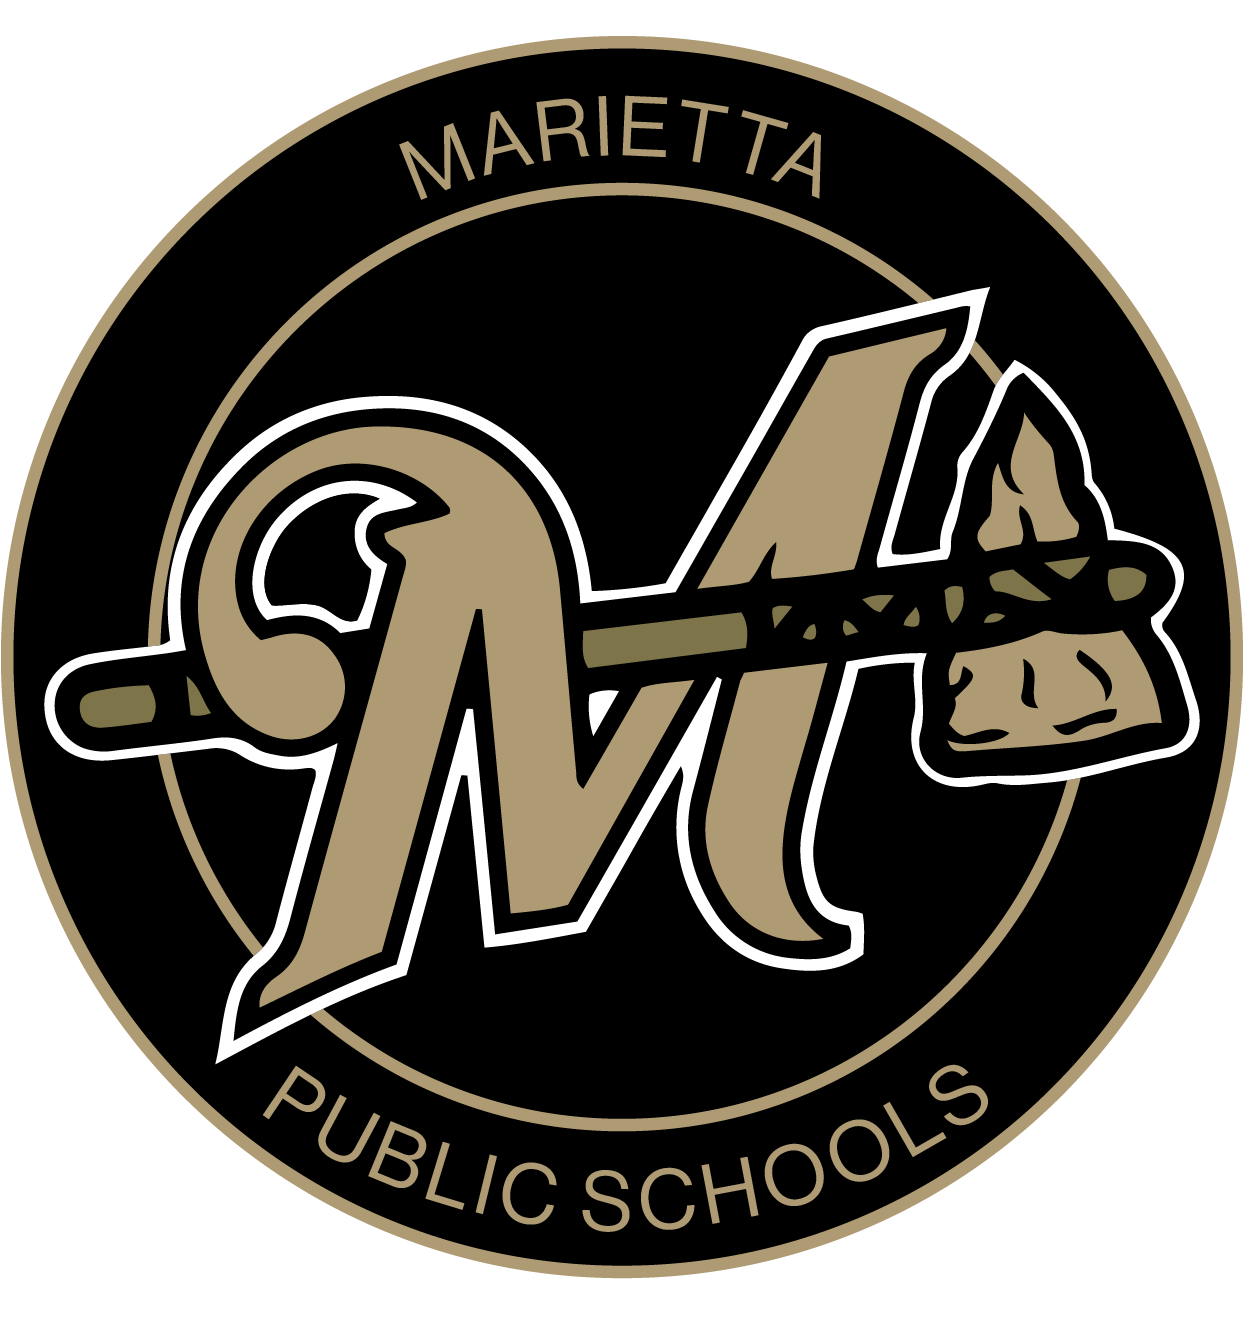 Marietta Logo - Marietta Public Schools